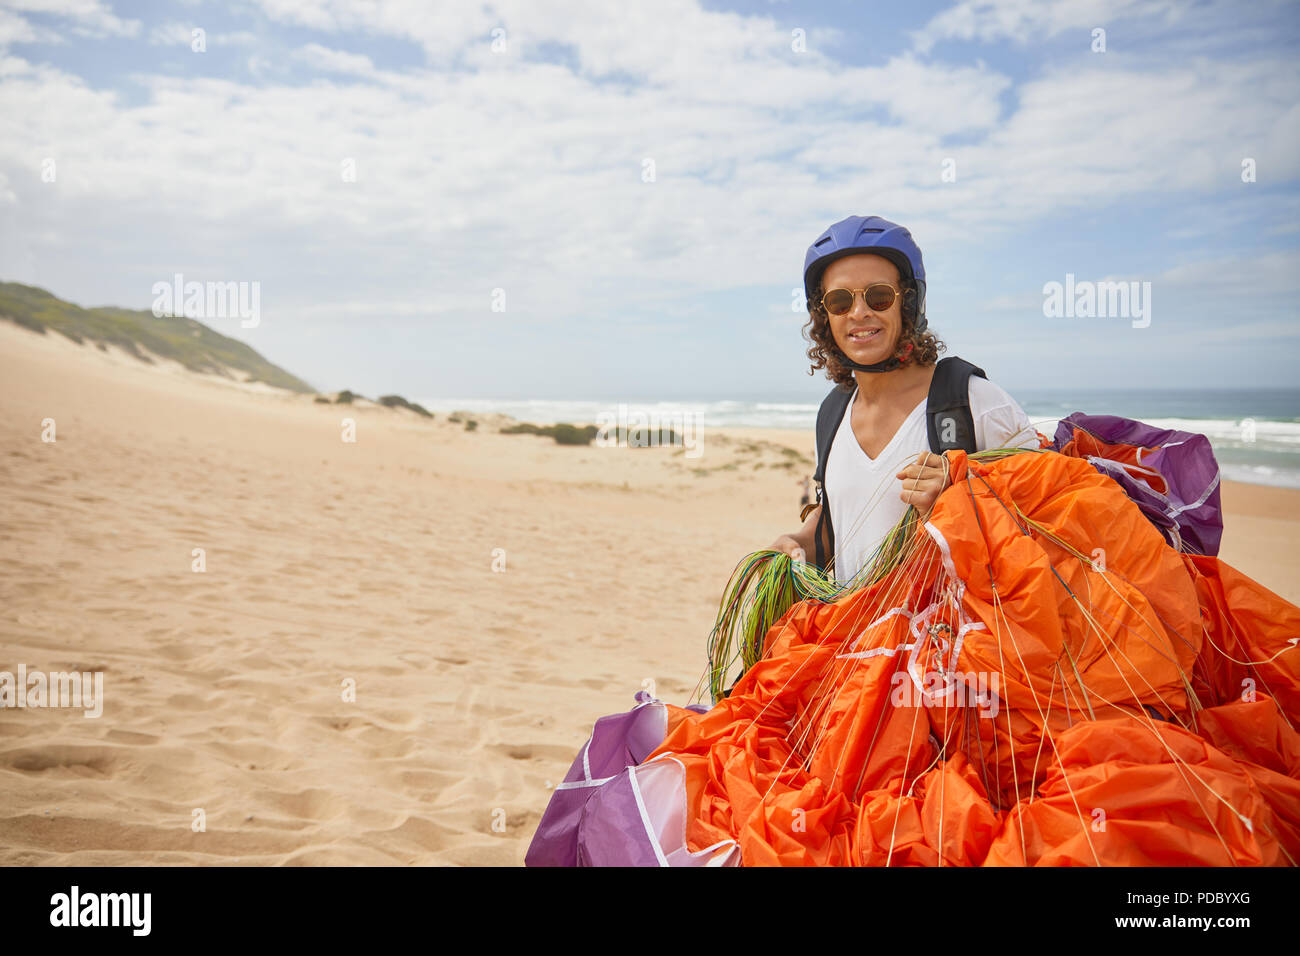 Portrait of smiling male parapentiste avec parachute on beach Banque D'Images